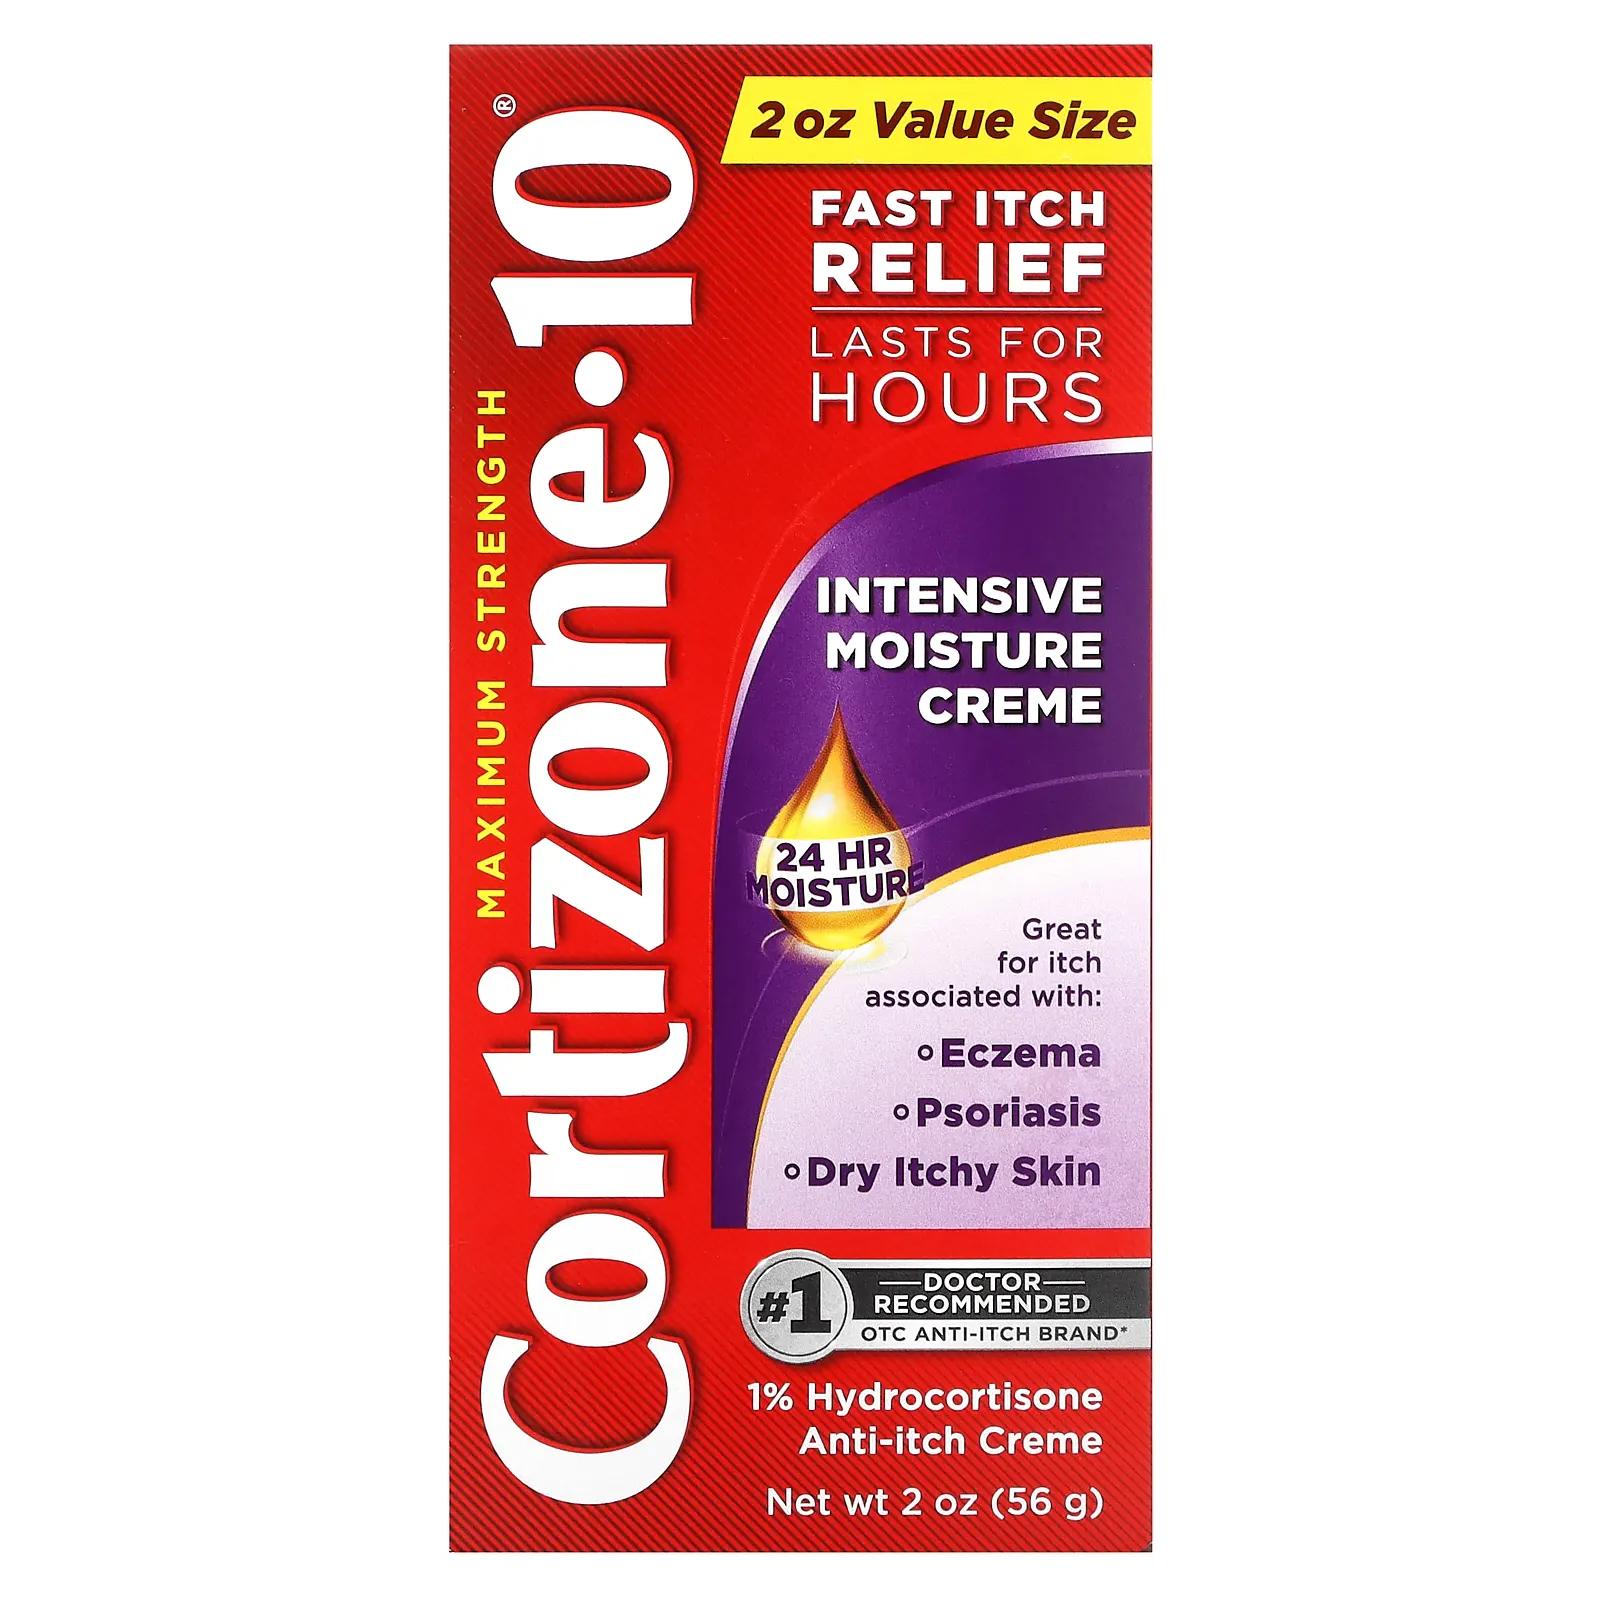 Cortizone 10 Maximum Strength интенсивный увлажняющий крем 56 г (2 унции) крем увлажняющий cortizone 10 maximum strength 28 г